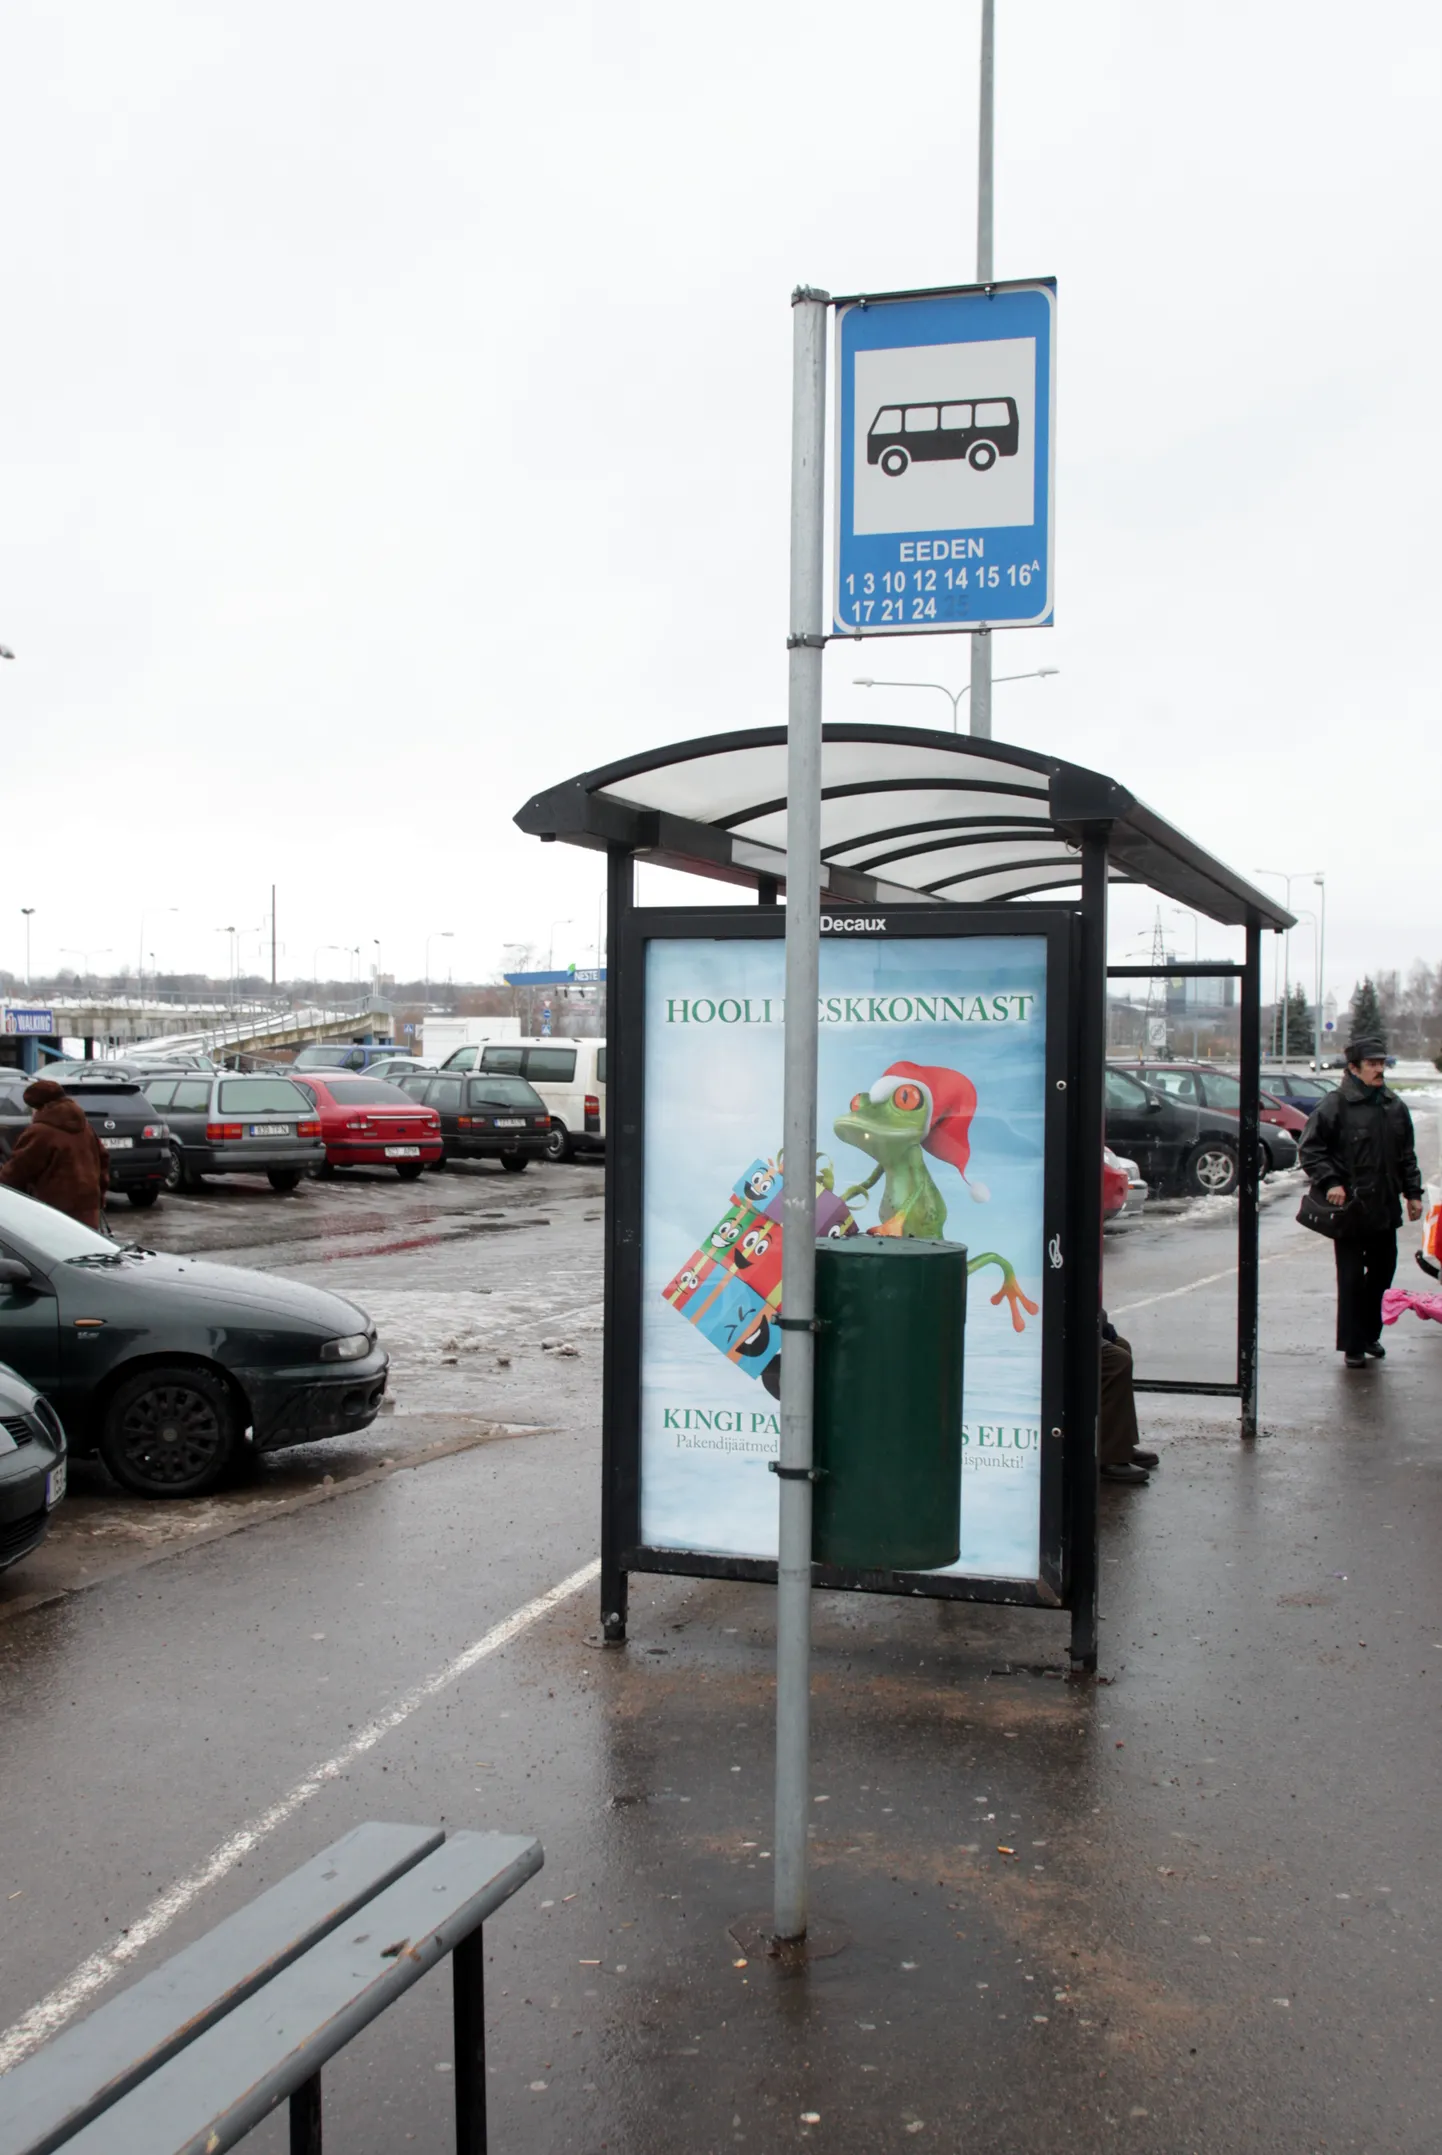 Автобусная остановка Eeden в Тарту.